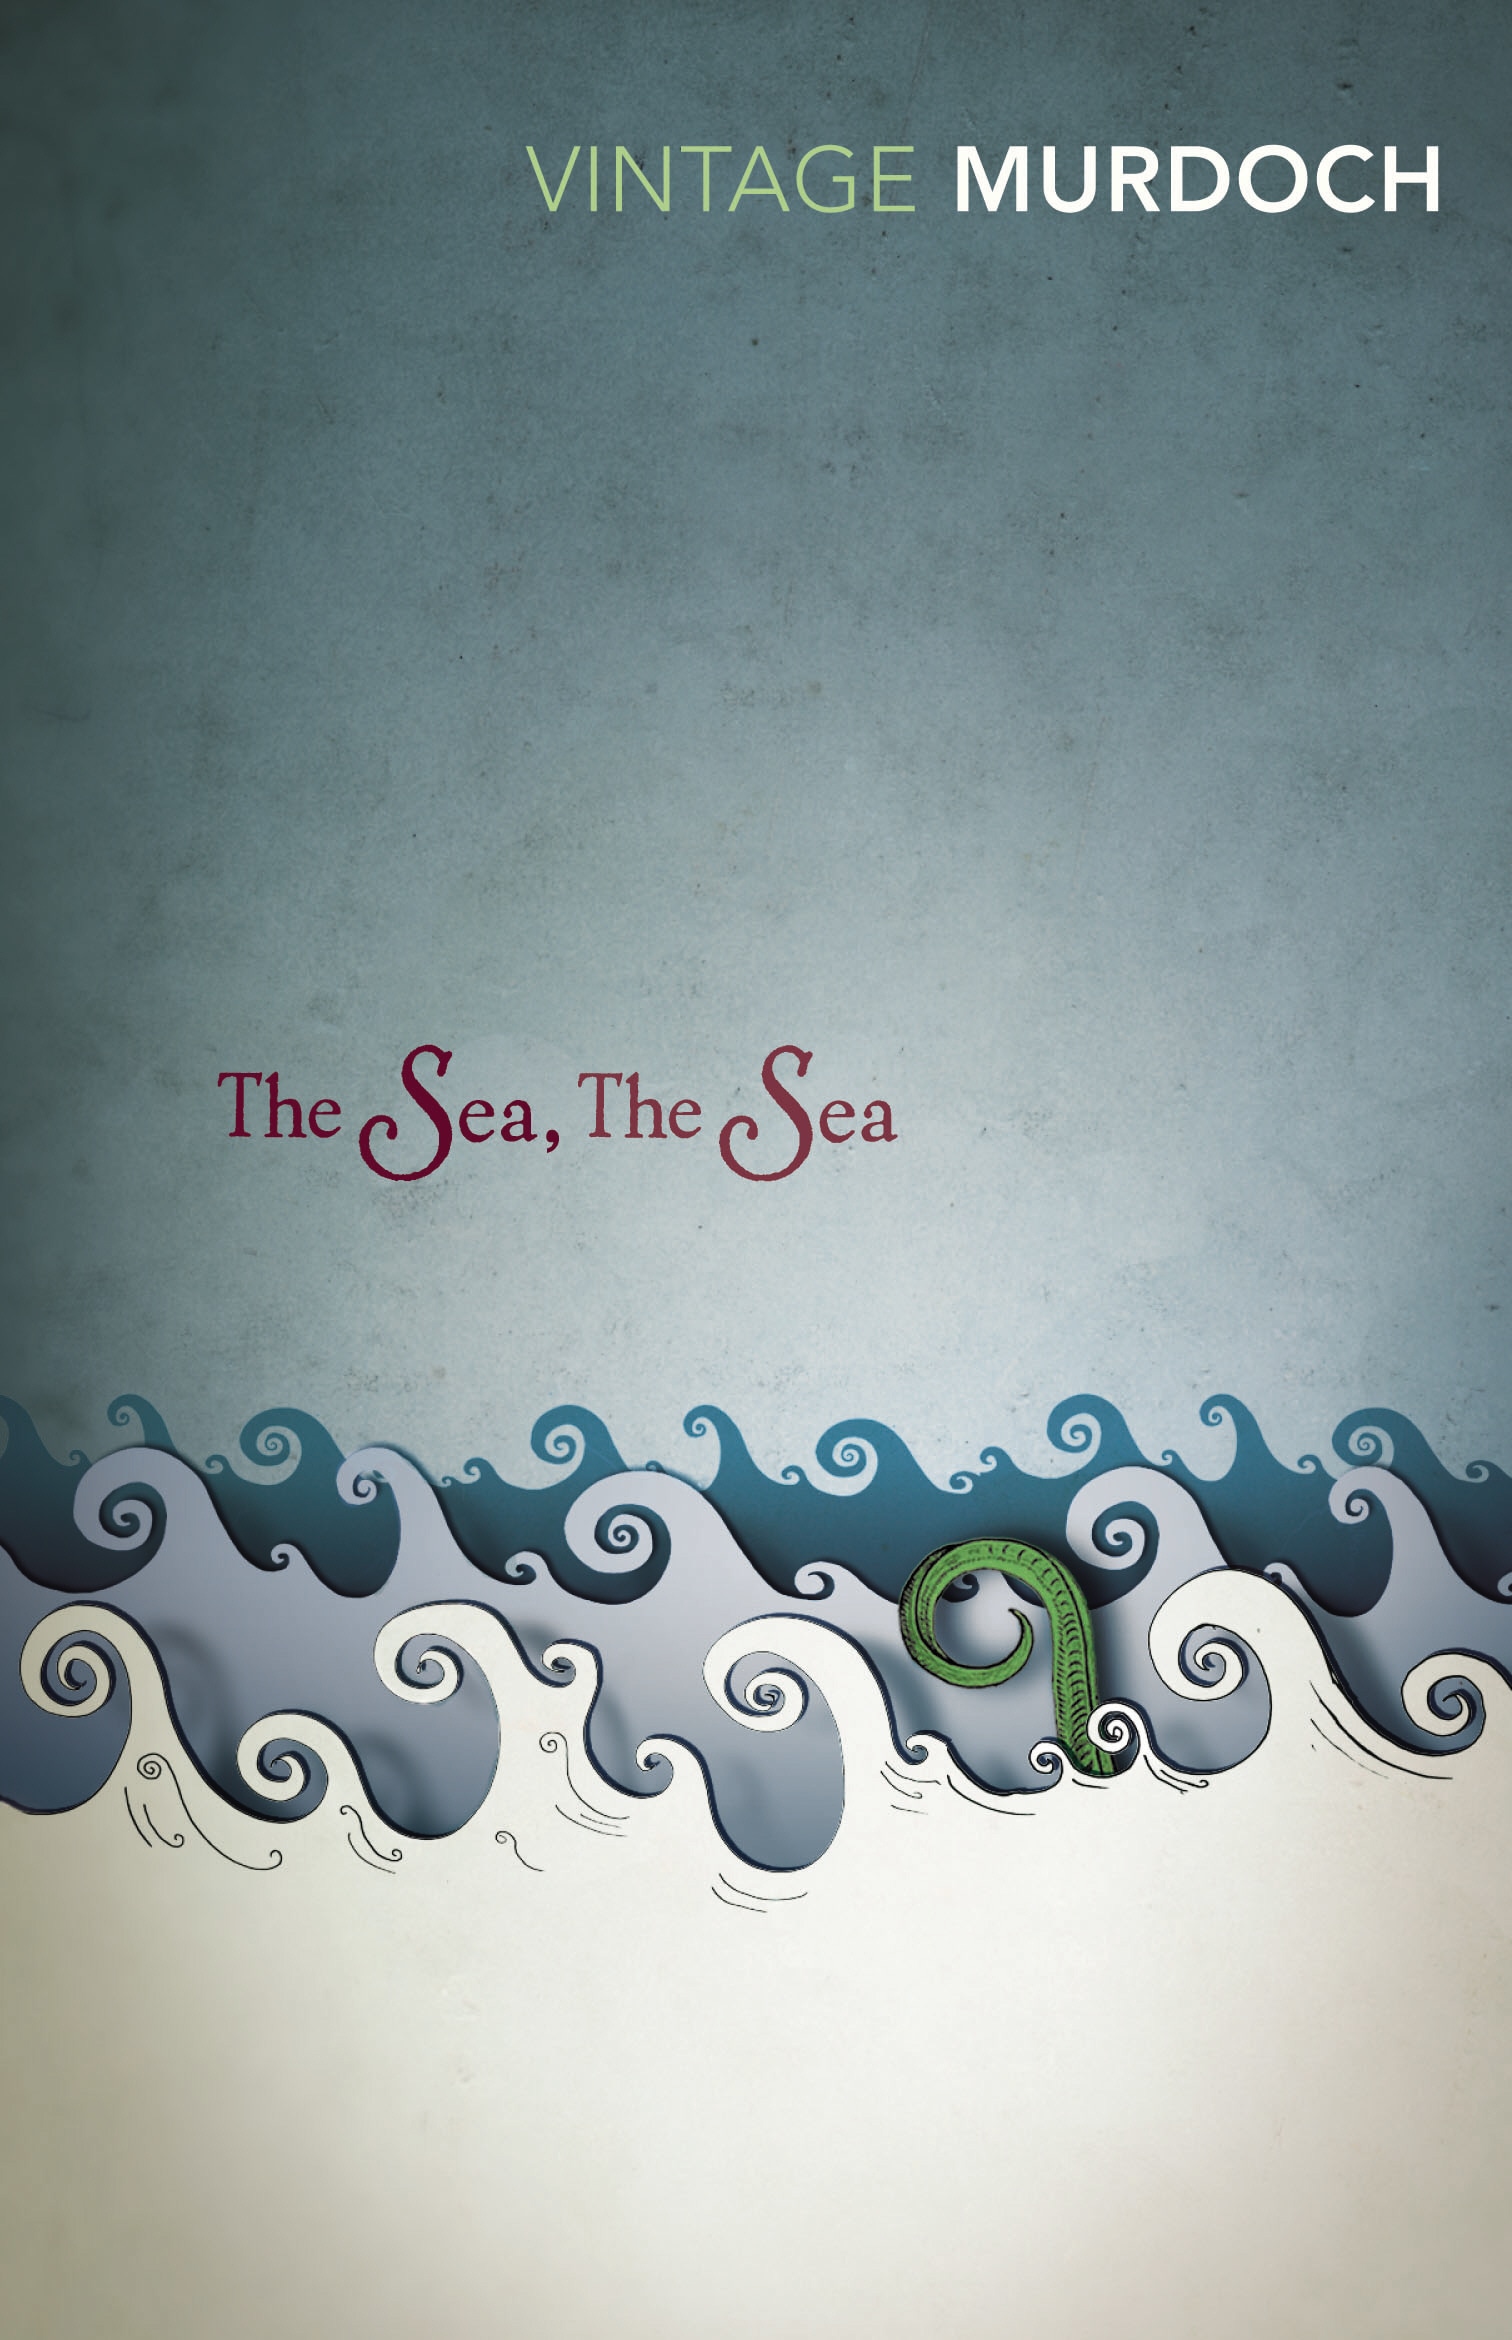 Book “The Sea, The Sea” by Iris Murdoch, John Burnside — July 1, 1999